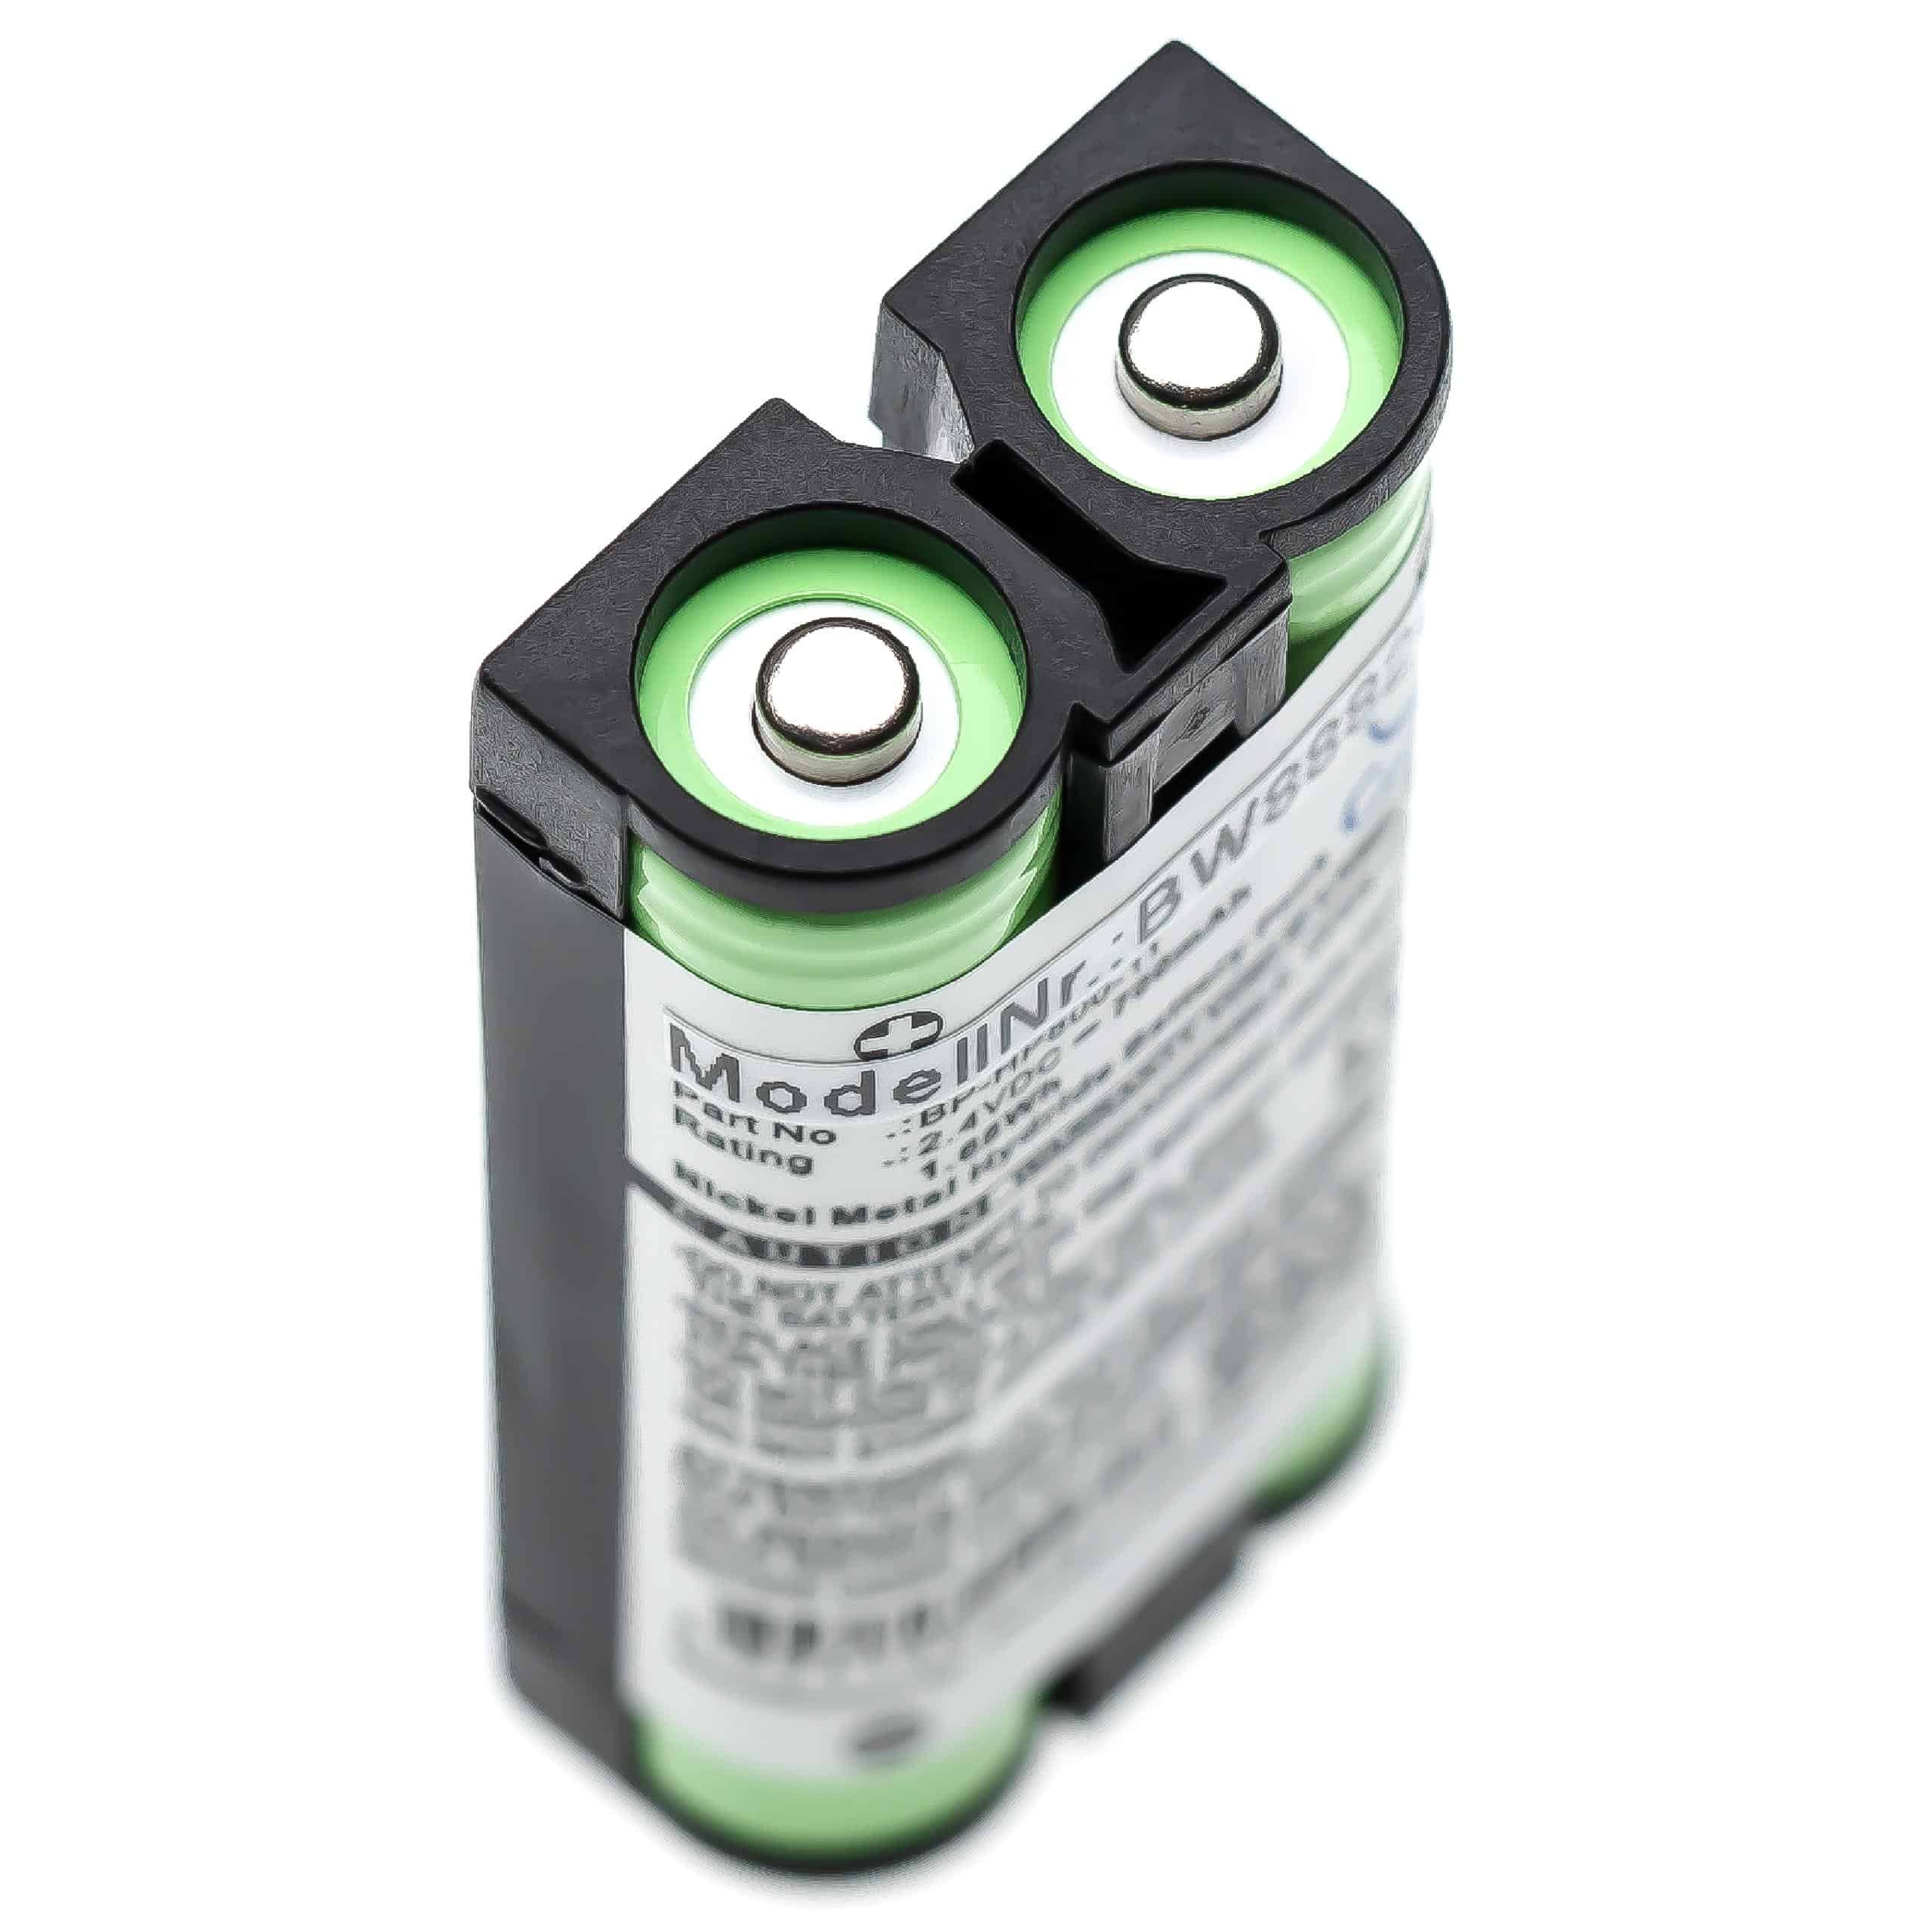 Batterie remplace Sony 9-885-216-11, 9-885-216-12, 9-885-218-43 pour casque audio - 700mAh 2,4V NiMH